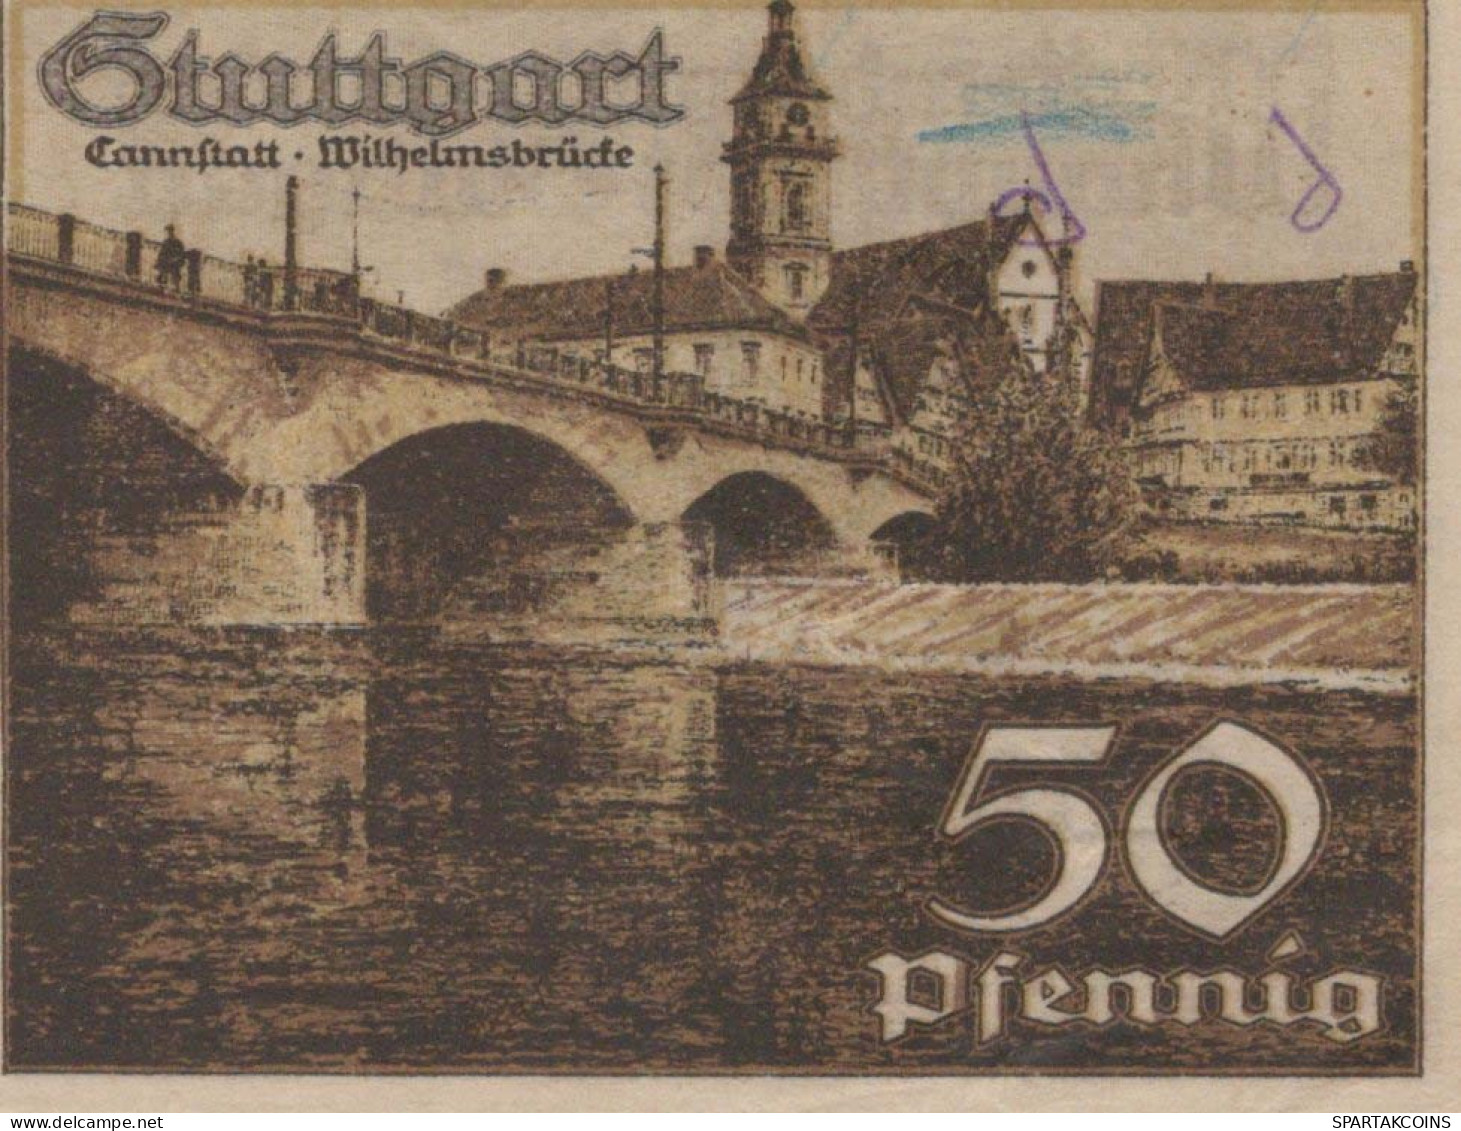 50 PFENNIG 1921 Stadt STUTTGART Württemberg UNC DEUTSCHLAND Notgeld #PC444 - [11] Emisiones Locales